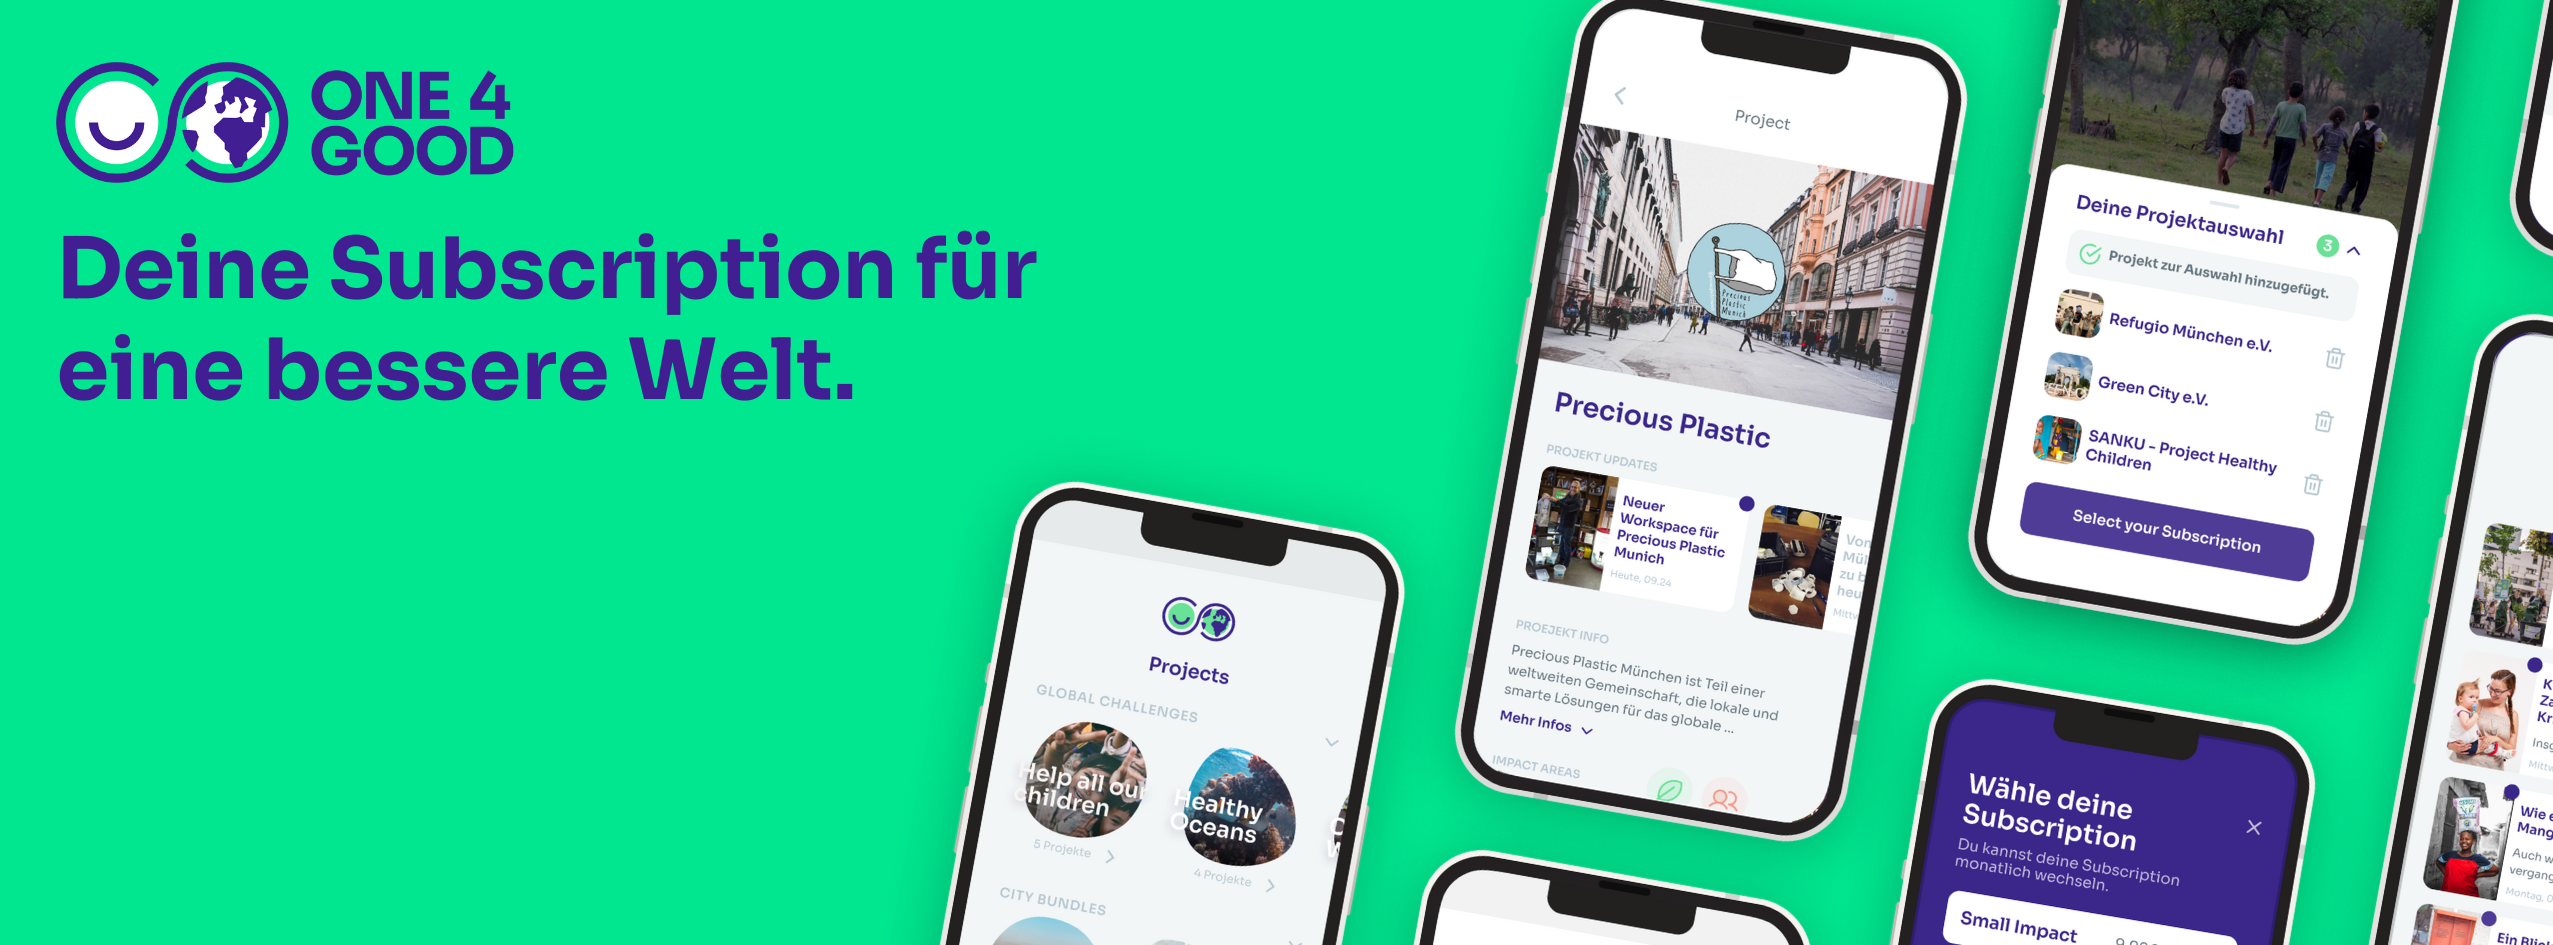 one4good / startup von München / Background